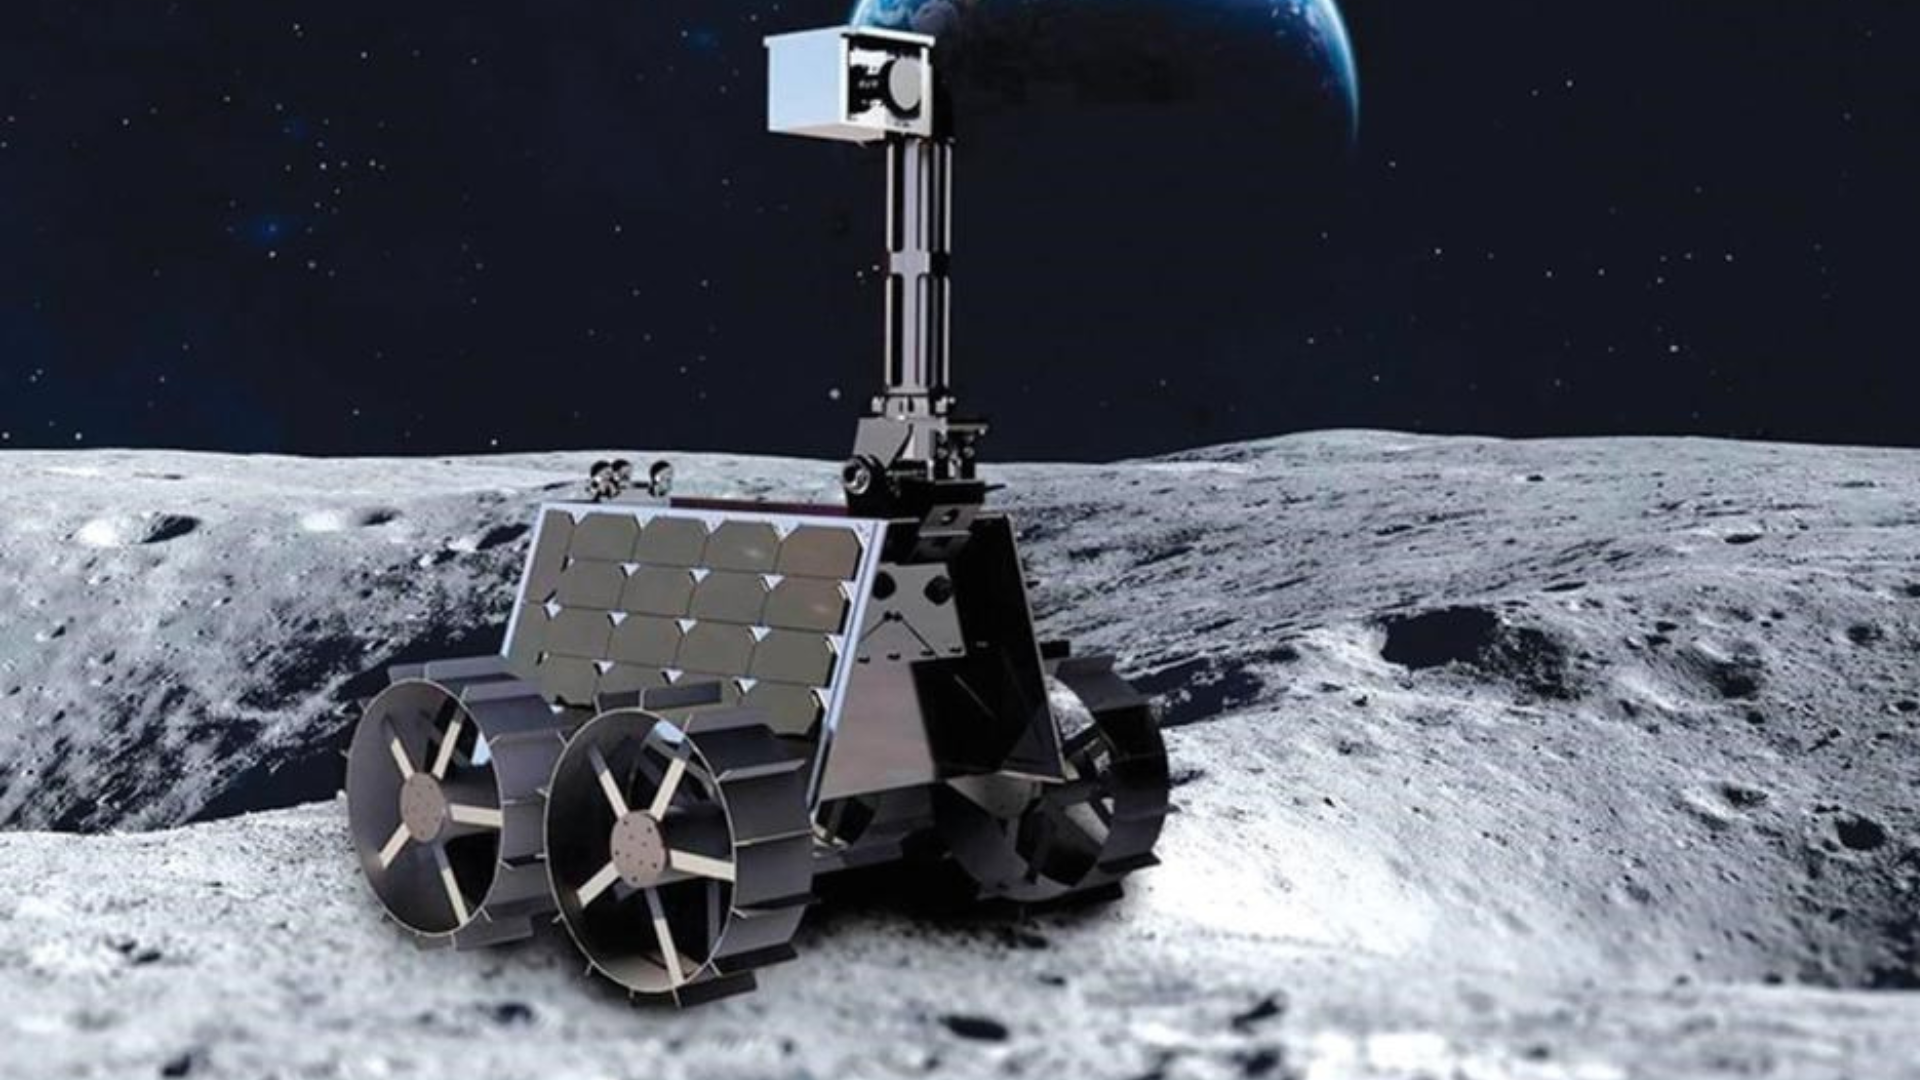 القمر ينتظر مستكشف راشد فى أول مهمة عربية إستكشافية على سطح القمر